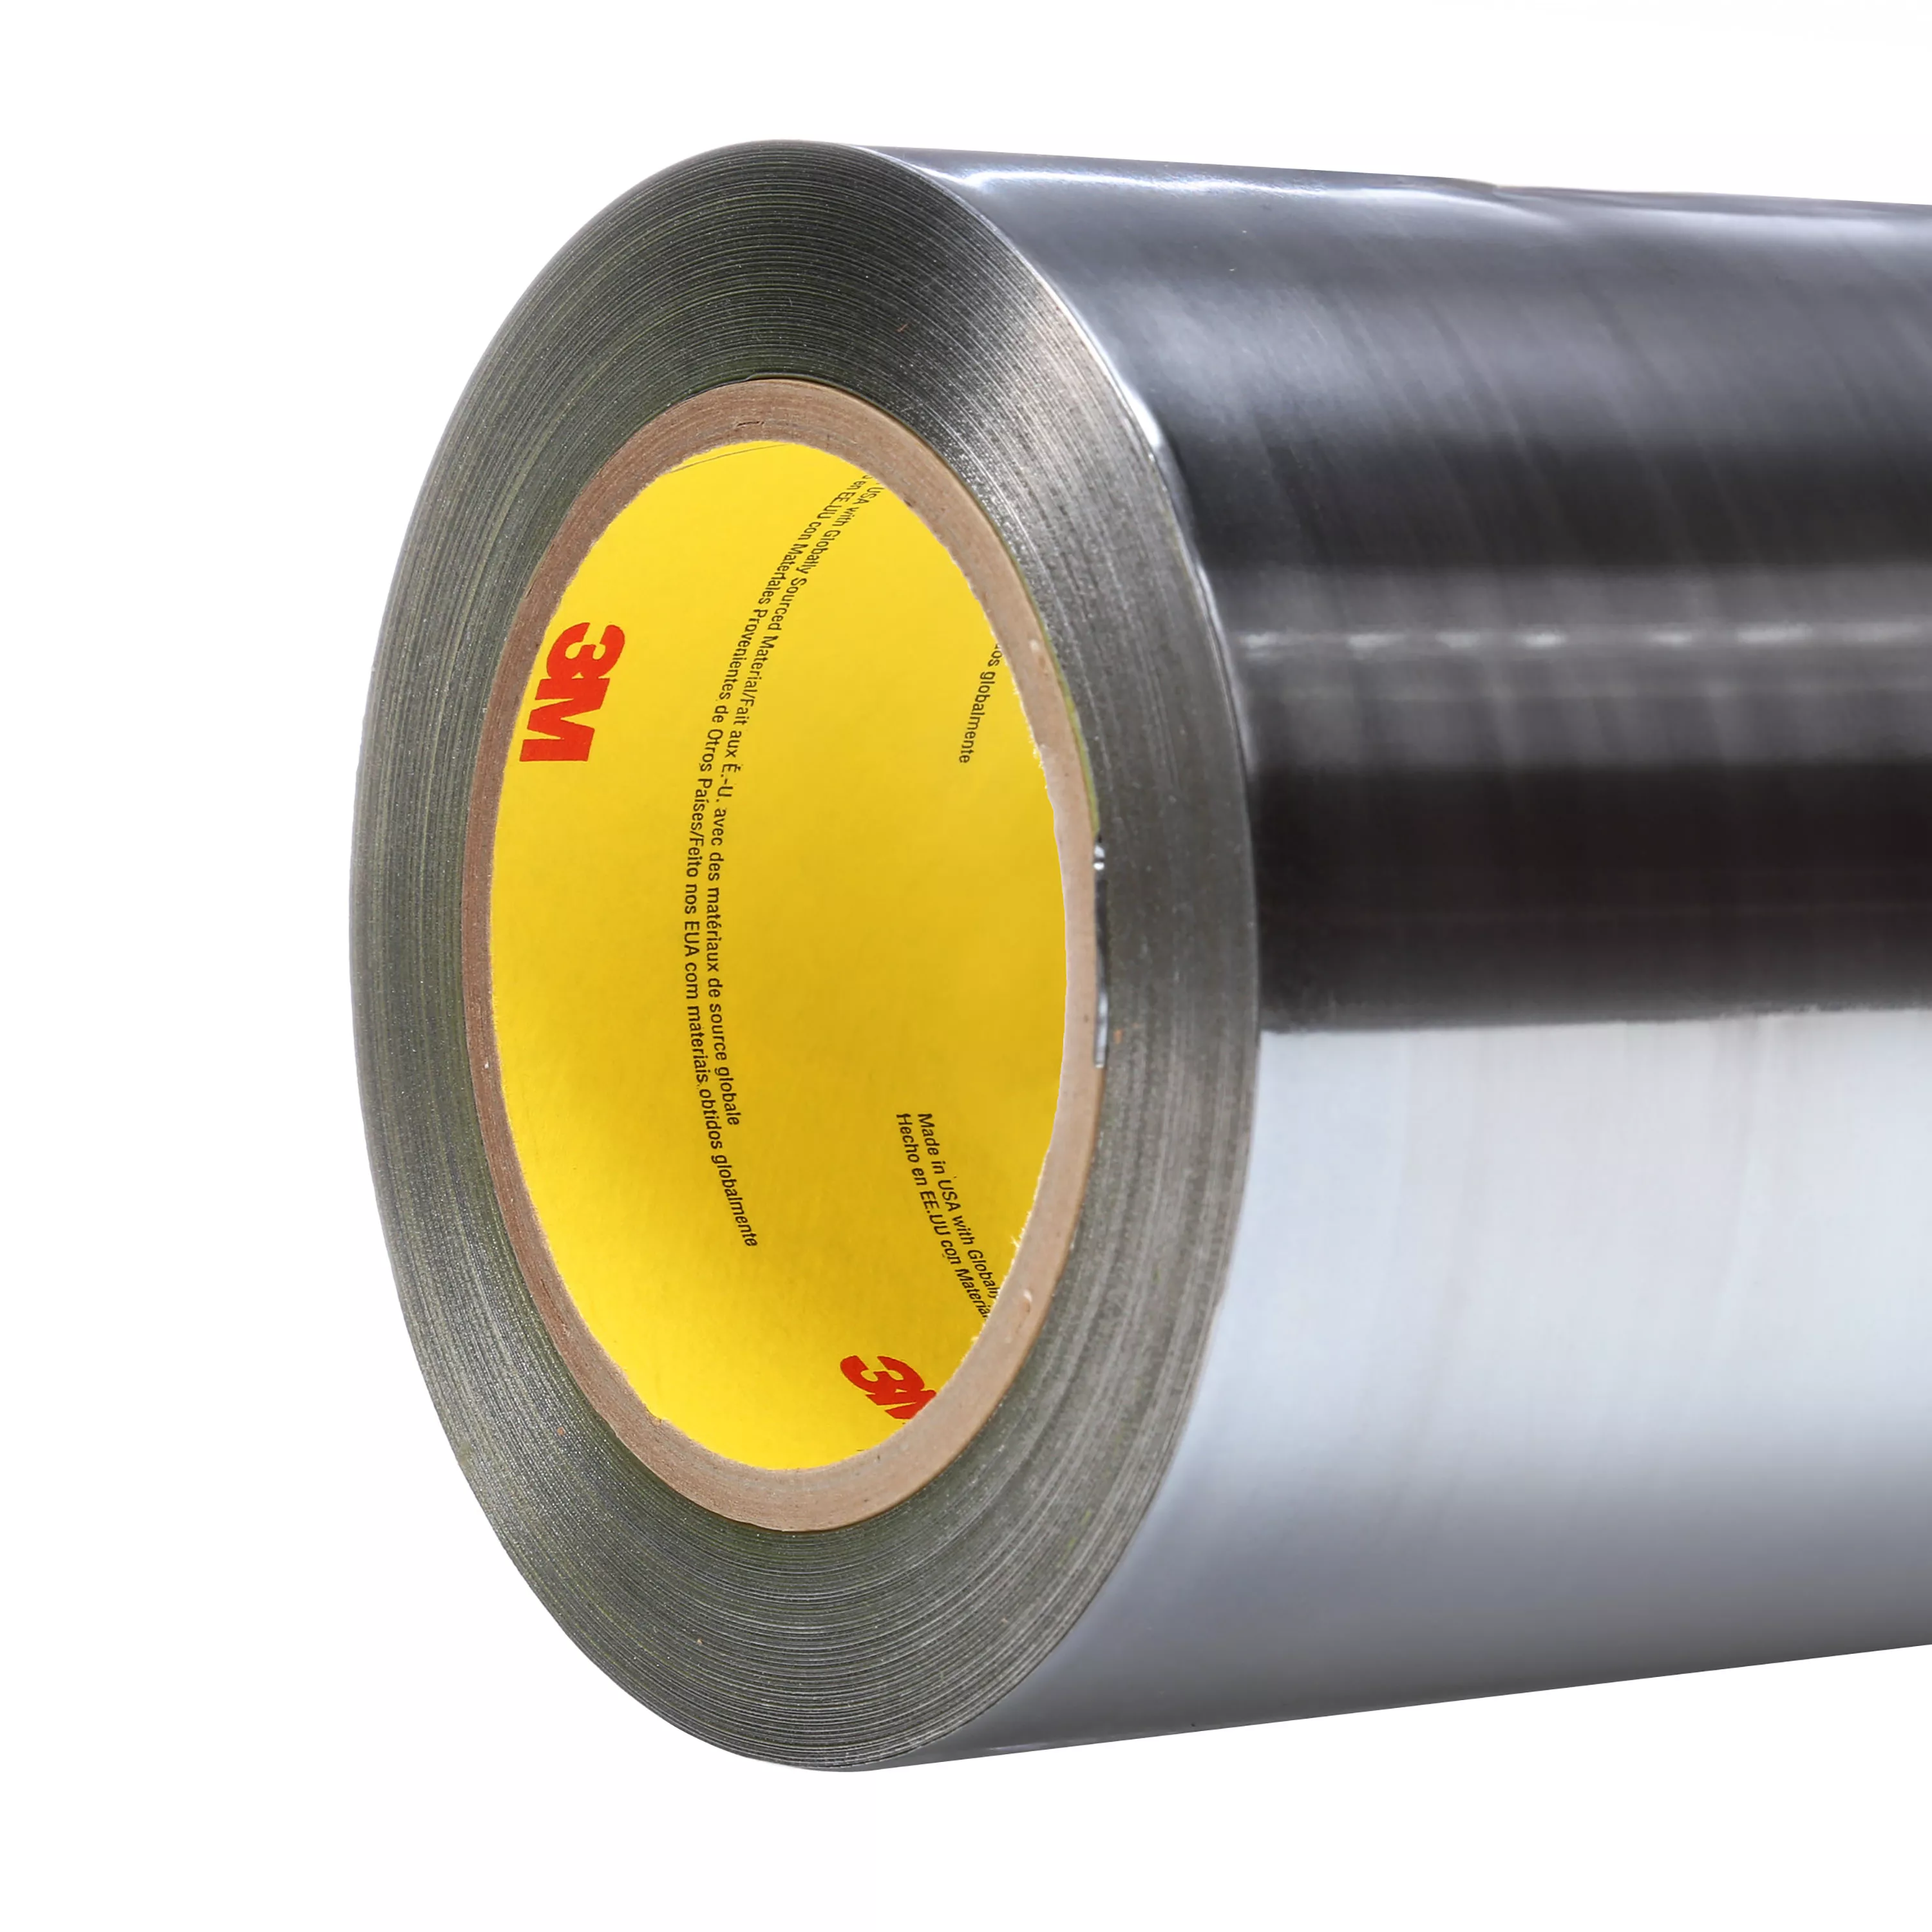 3M™ Aluminum Foil Tape 425, Silver, 12 in x 60 yd, 4.6 mil, 1 roll per
case